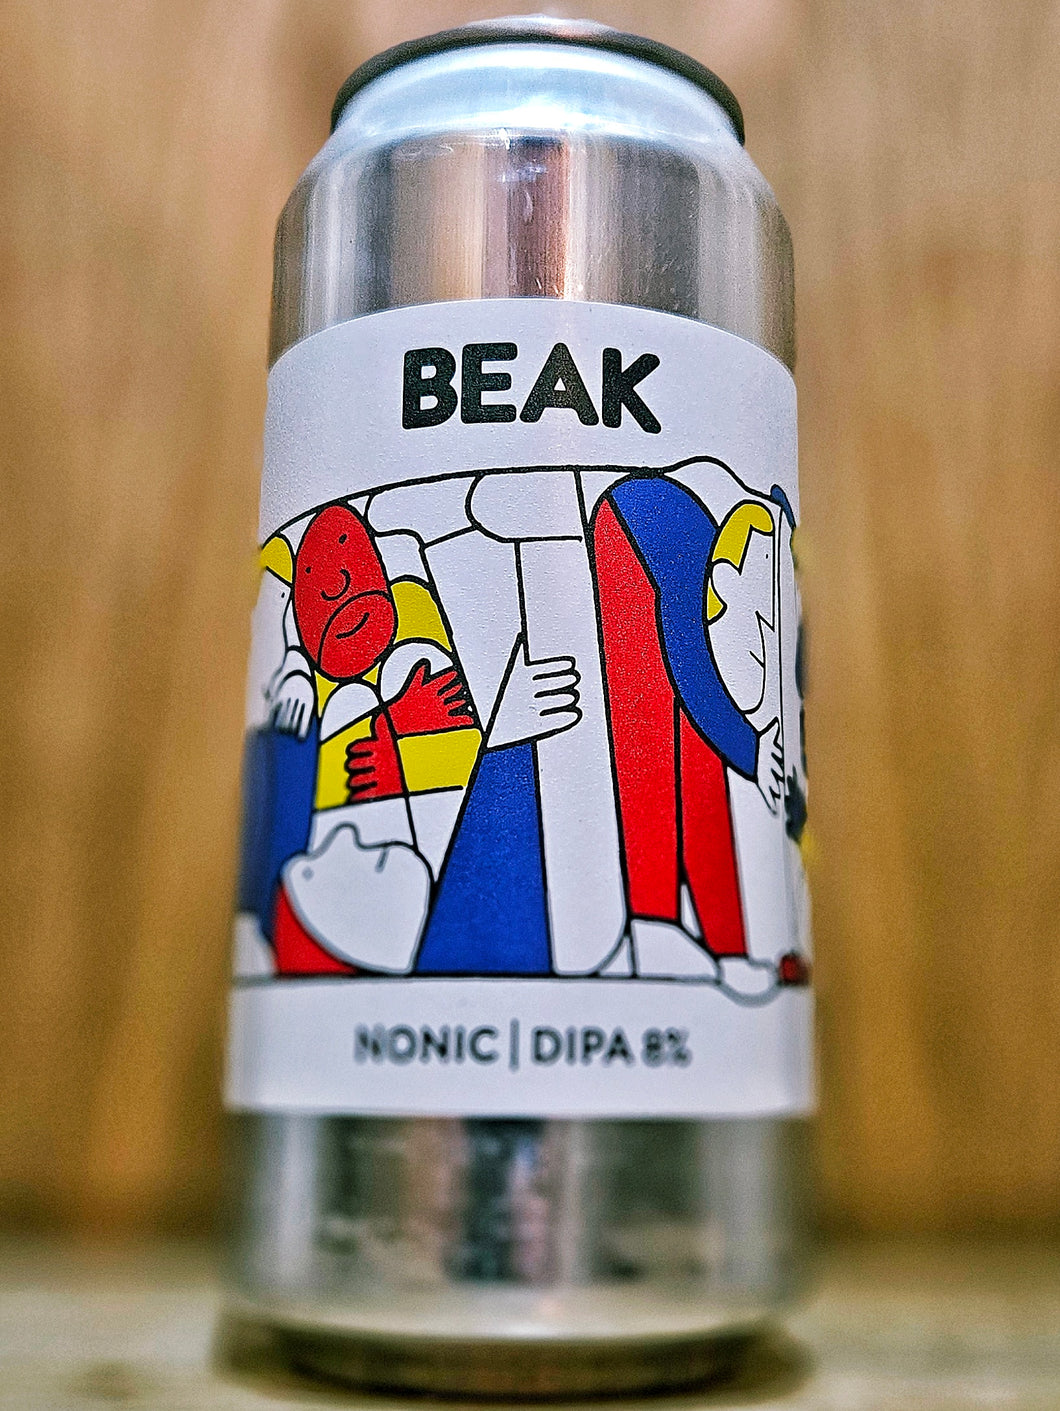 Beak Brewery - Nonic